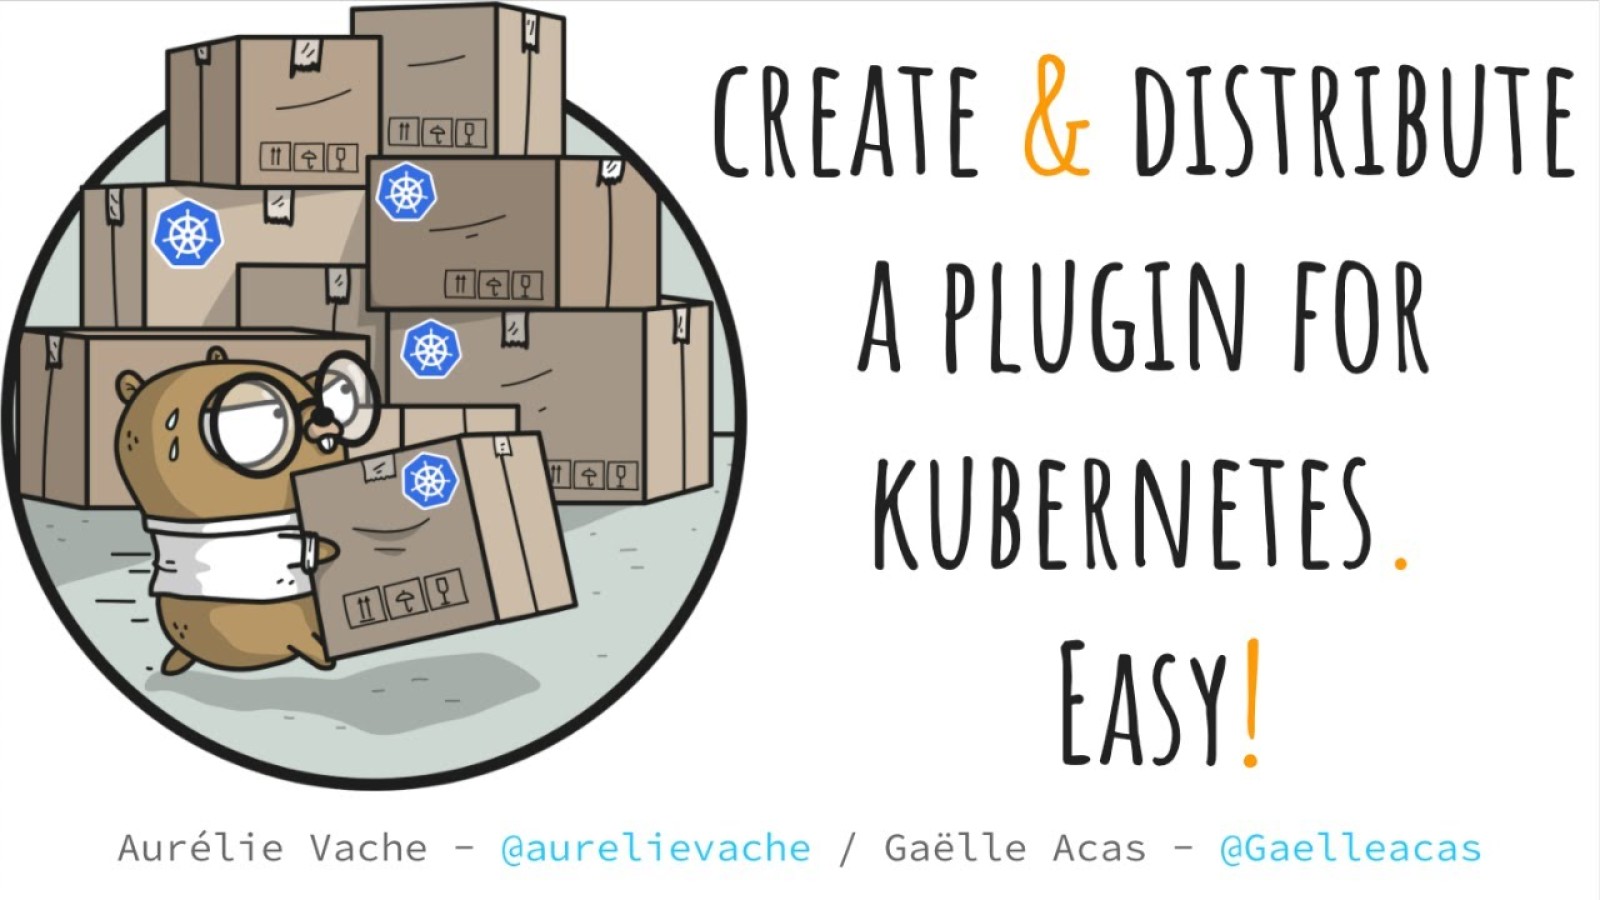 Créer un plugin pour Kubernetes en quelques minutes ? Easy ! 🙂